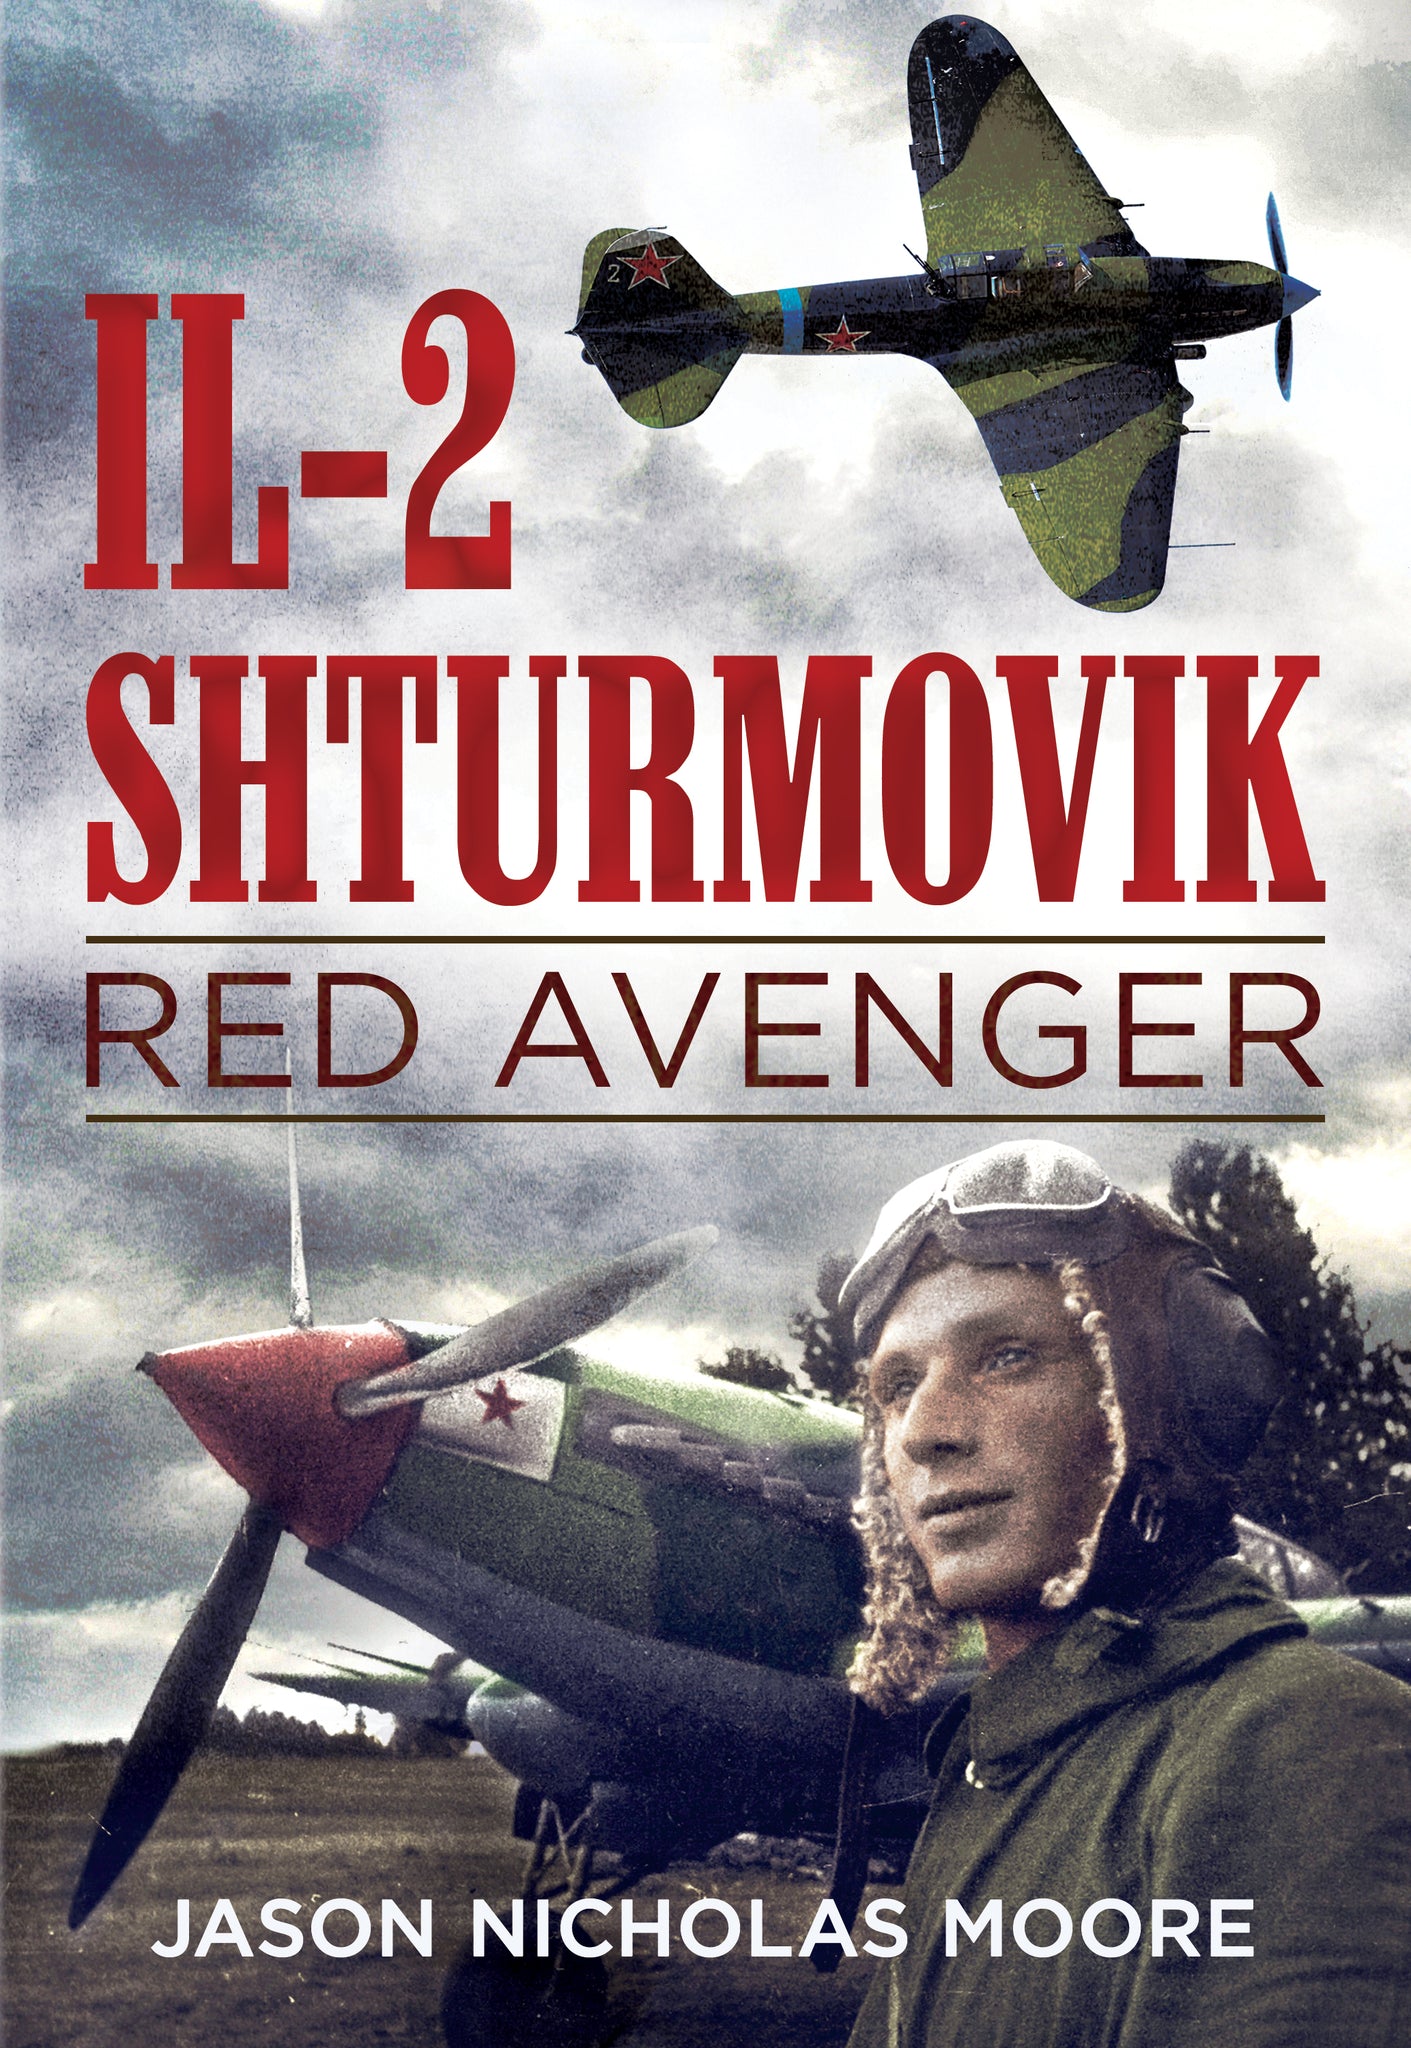 Il-2 Shturmovik: Red Avenger